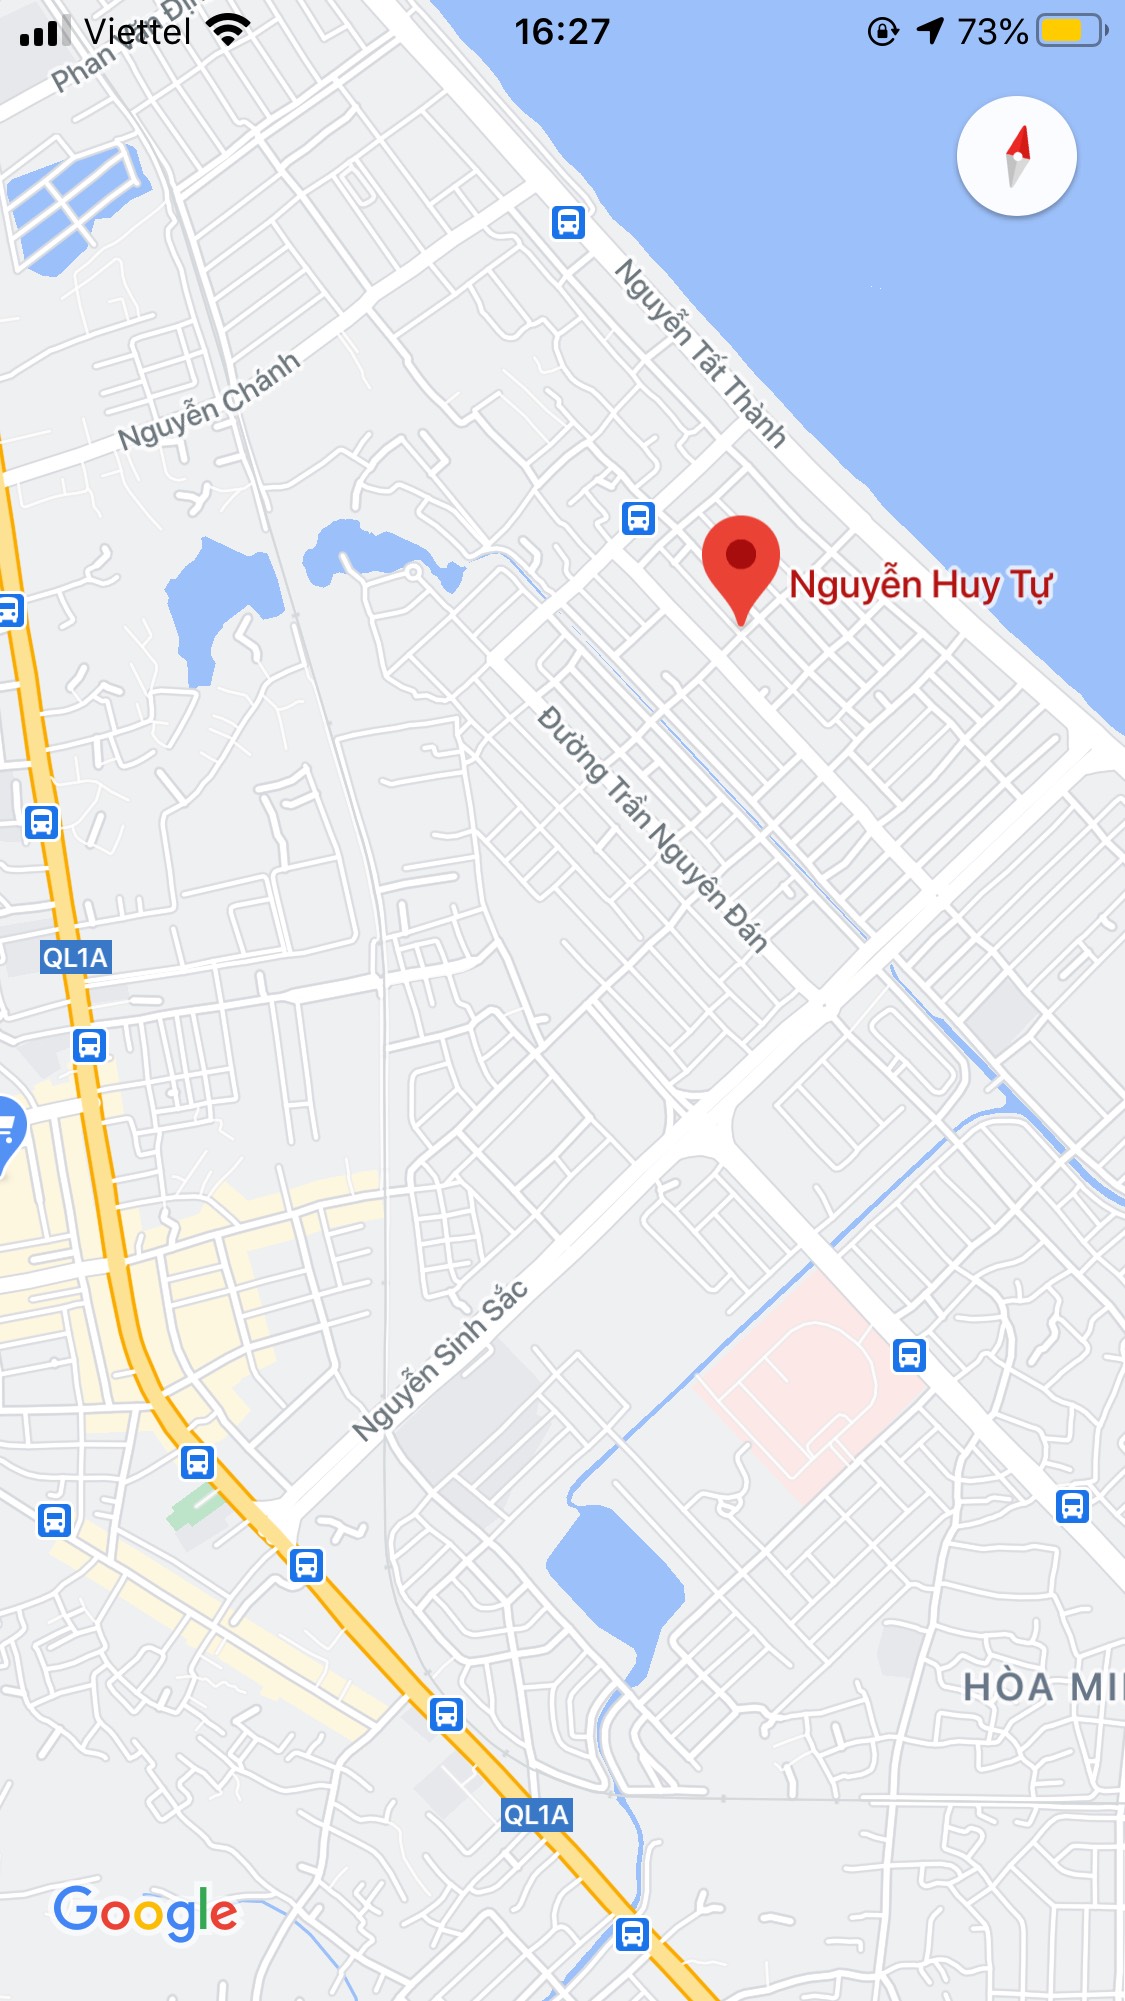 Bán nhà mặt tiền đường Nguyễn Huy Tự, Quận Liên Chiểu. DT: 76,5 m2, giá: 4,2 tỷ